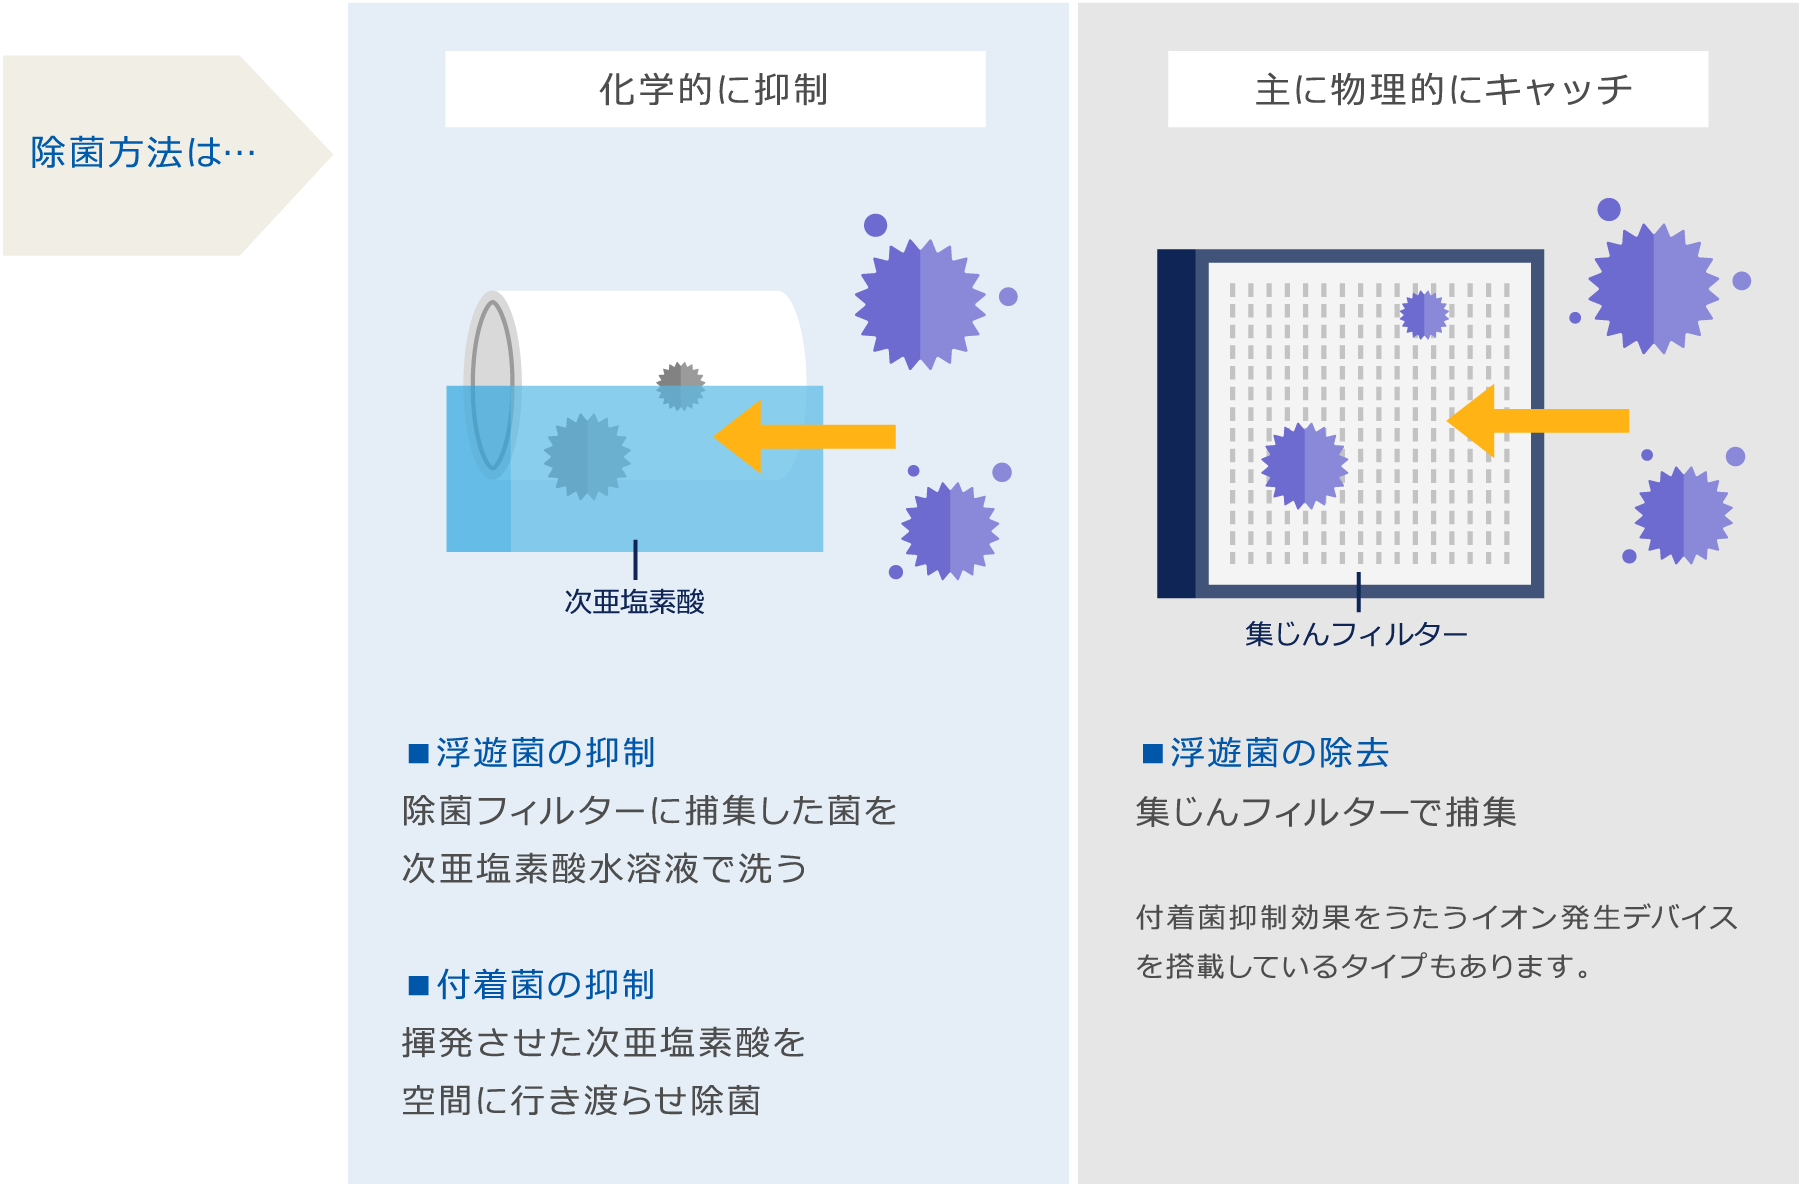 空気清浄機との除菌方法の違いのイメージ図